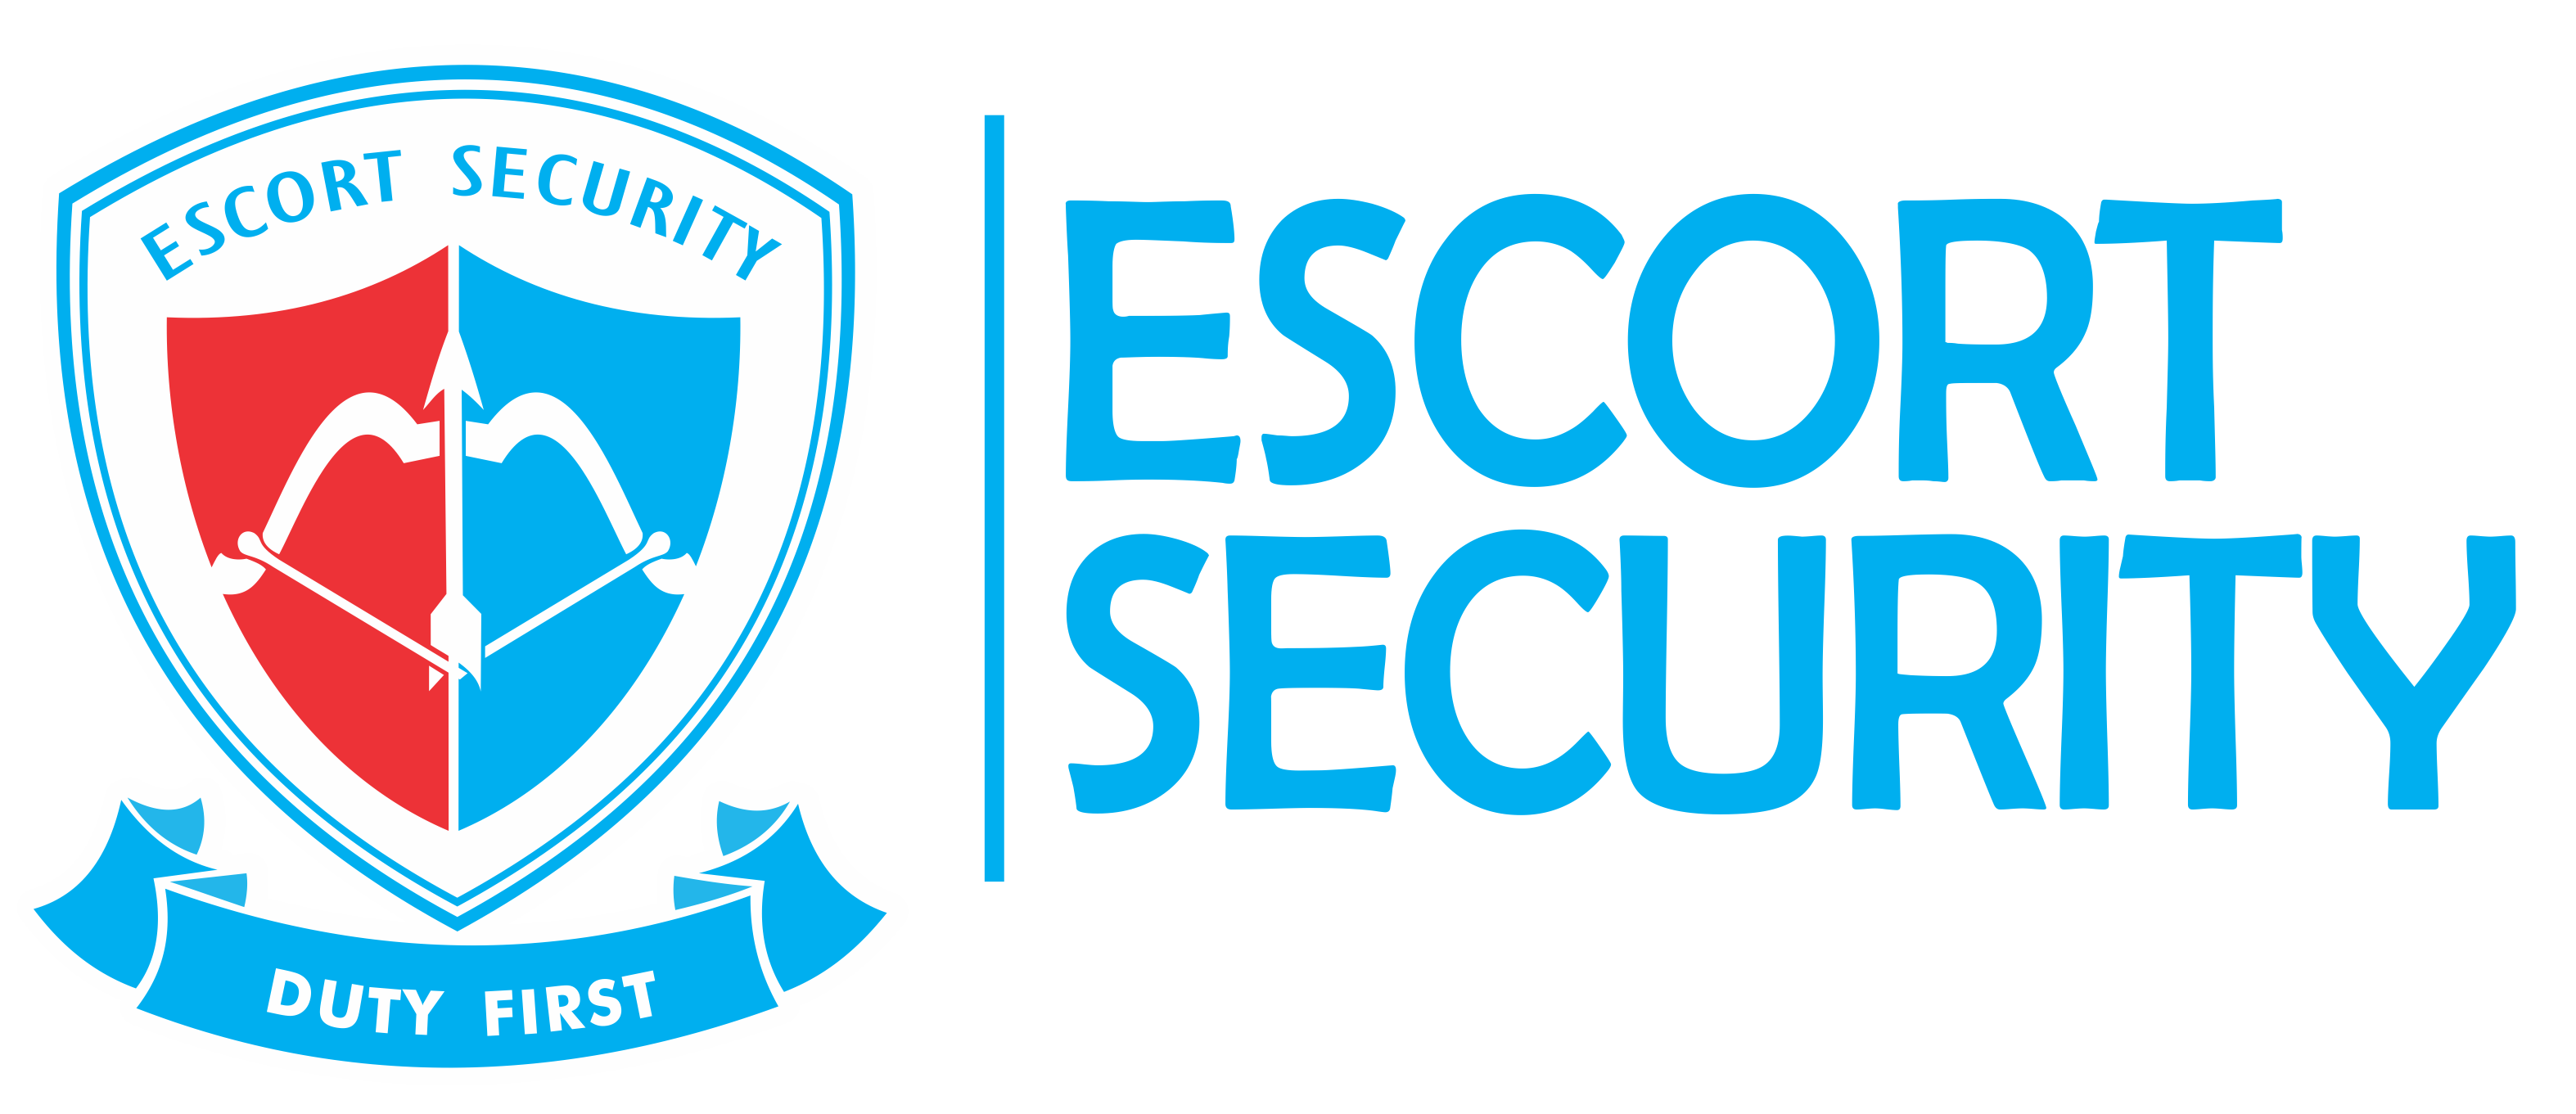 Escort Security